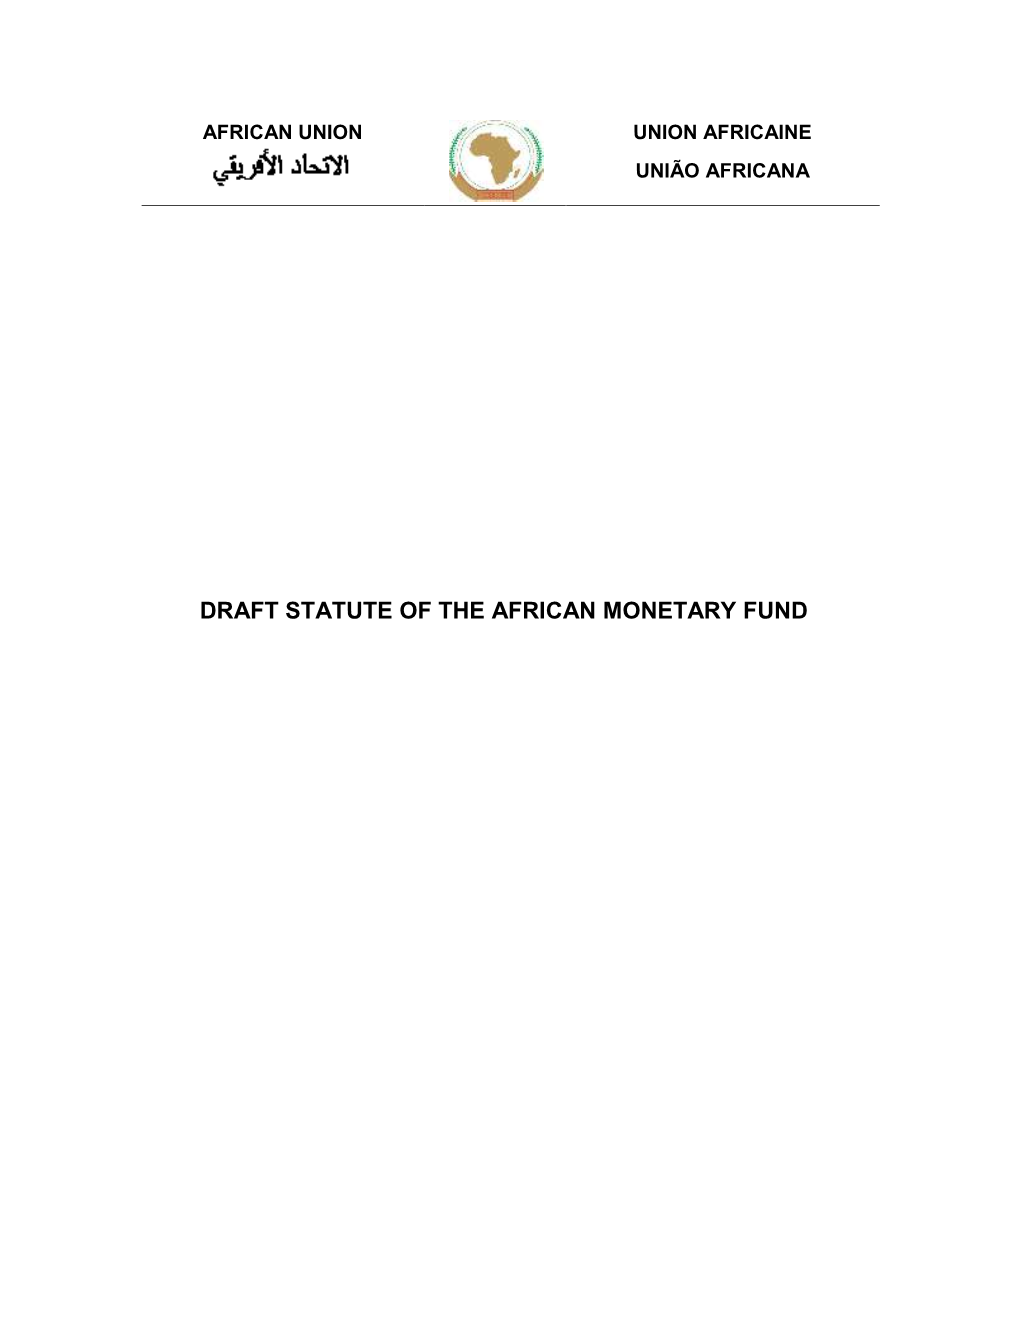 Draft Statute of the African Monetary Fund